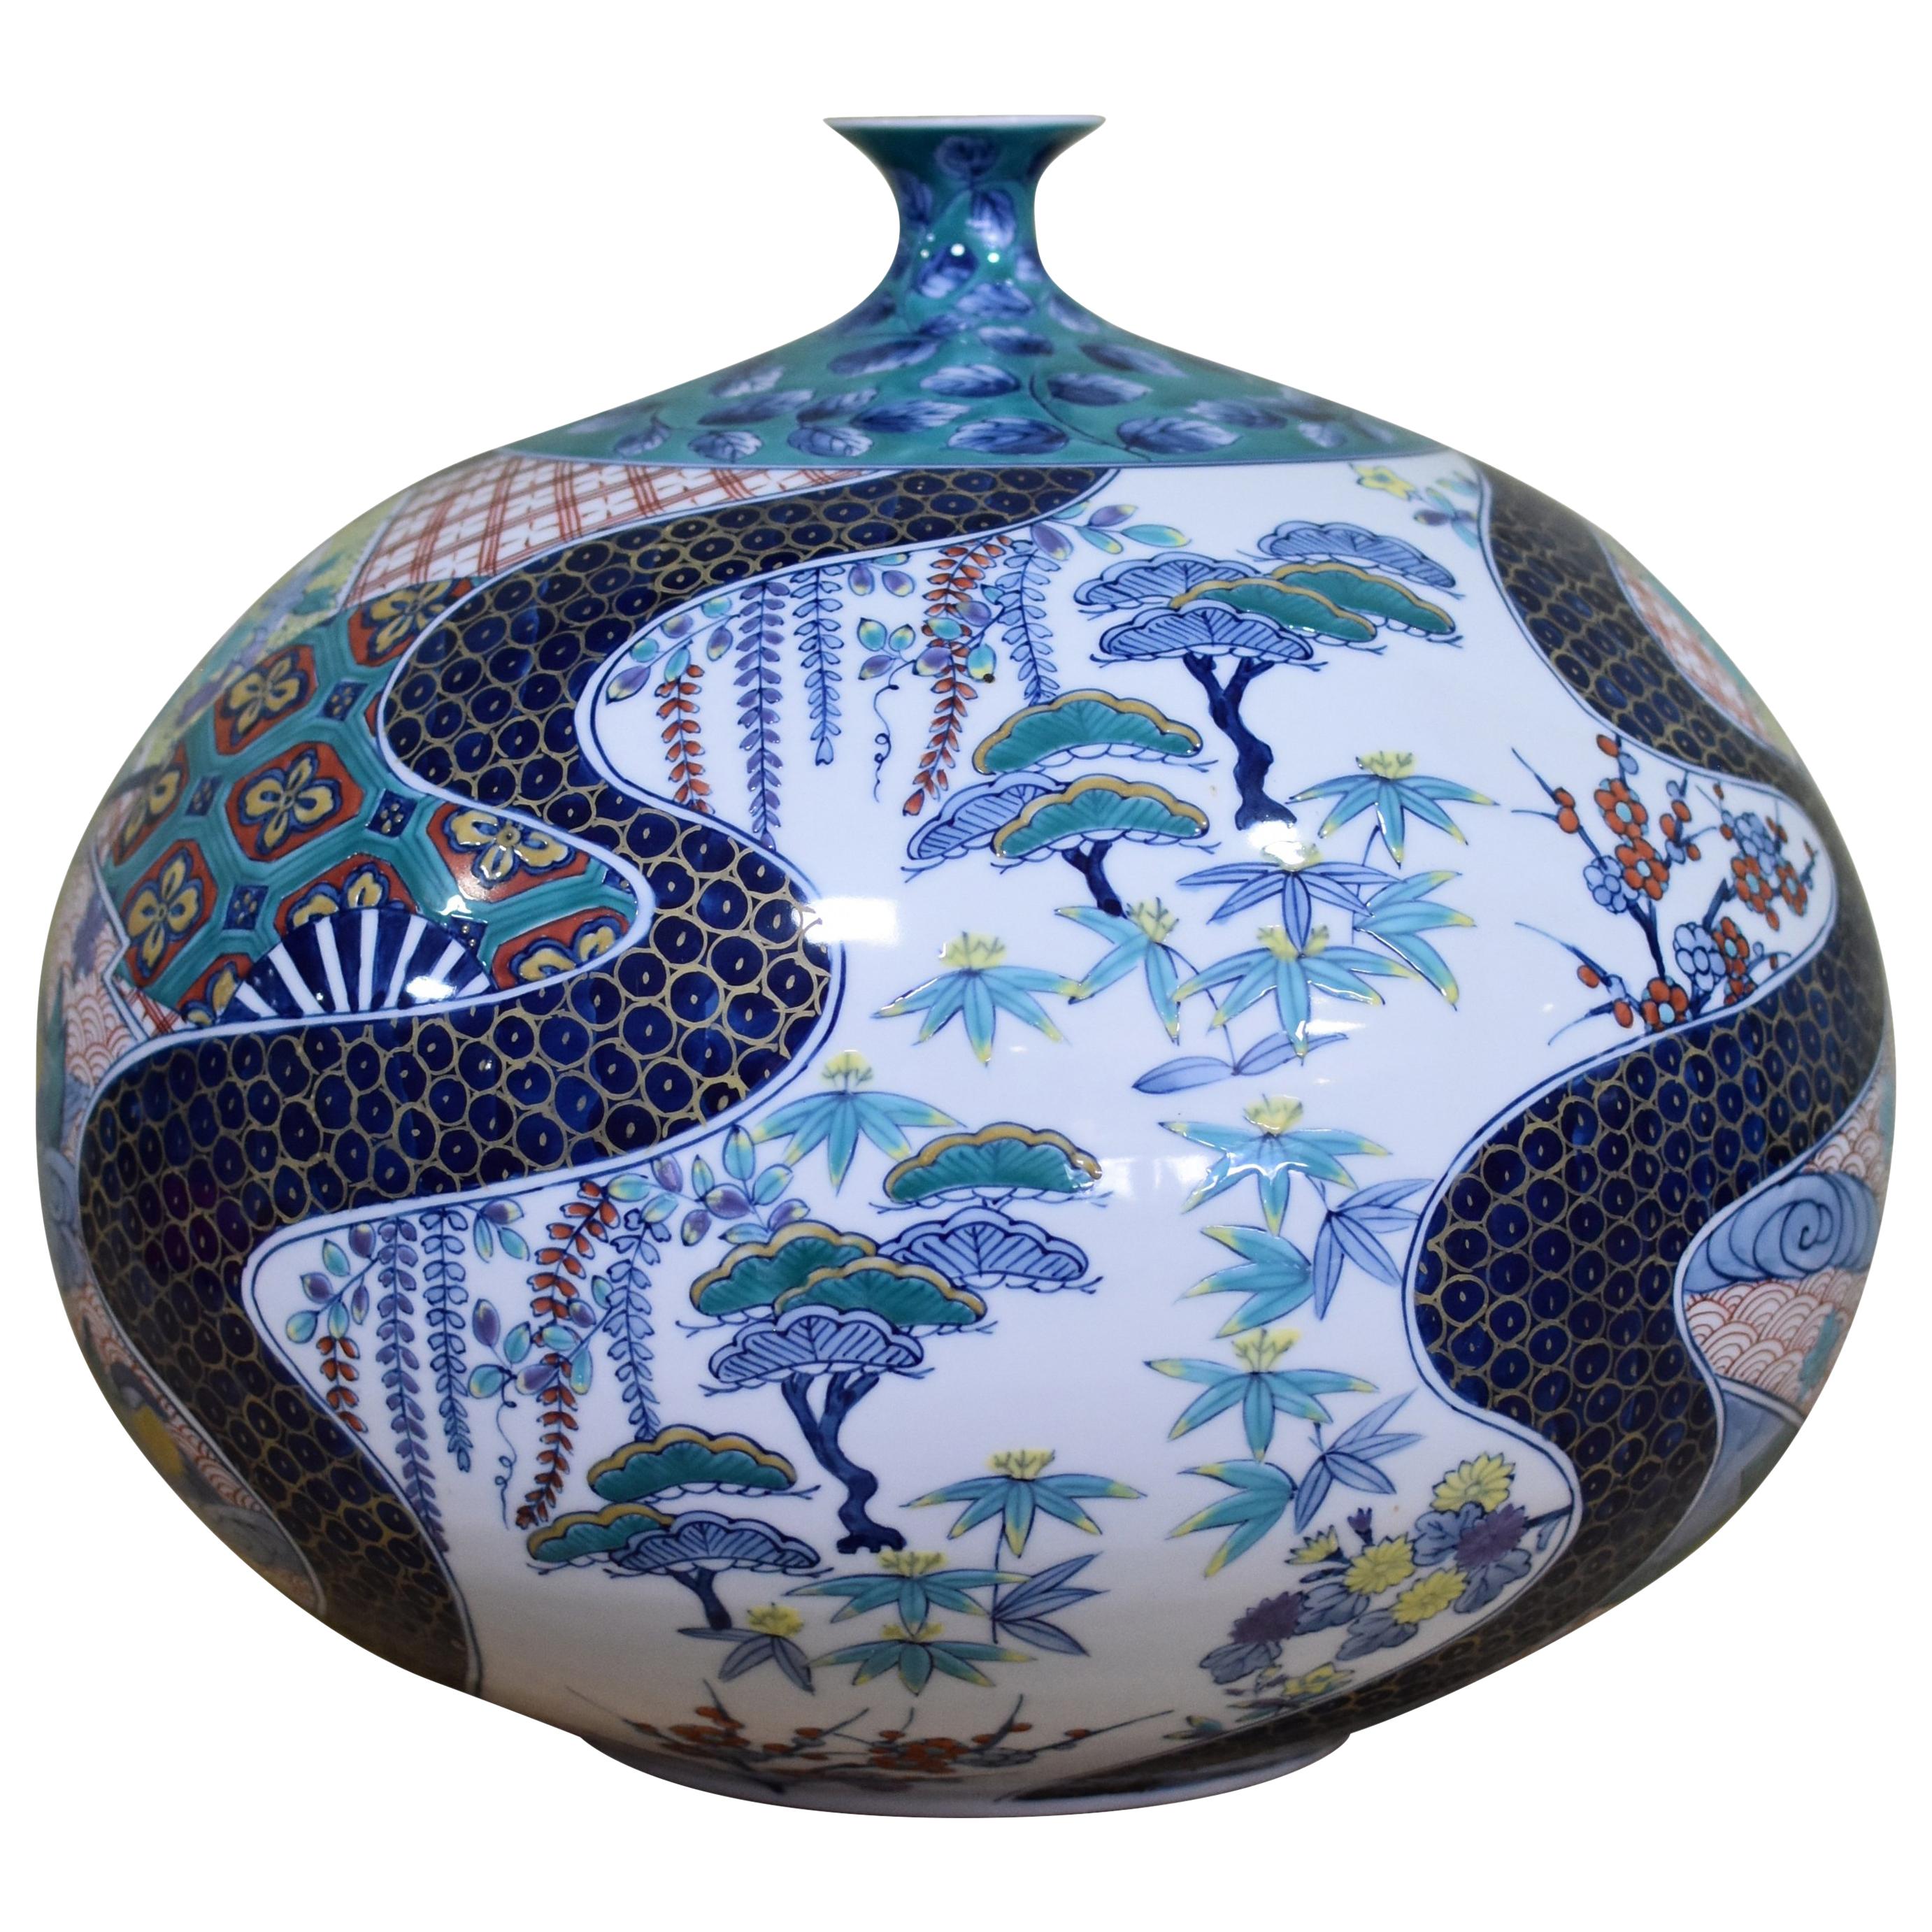 Große blau-grüne Porzellanvase von japanischem Meisterkünstler